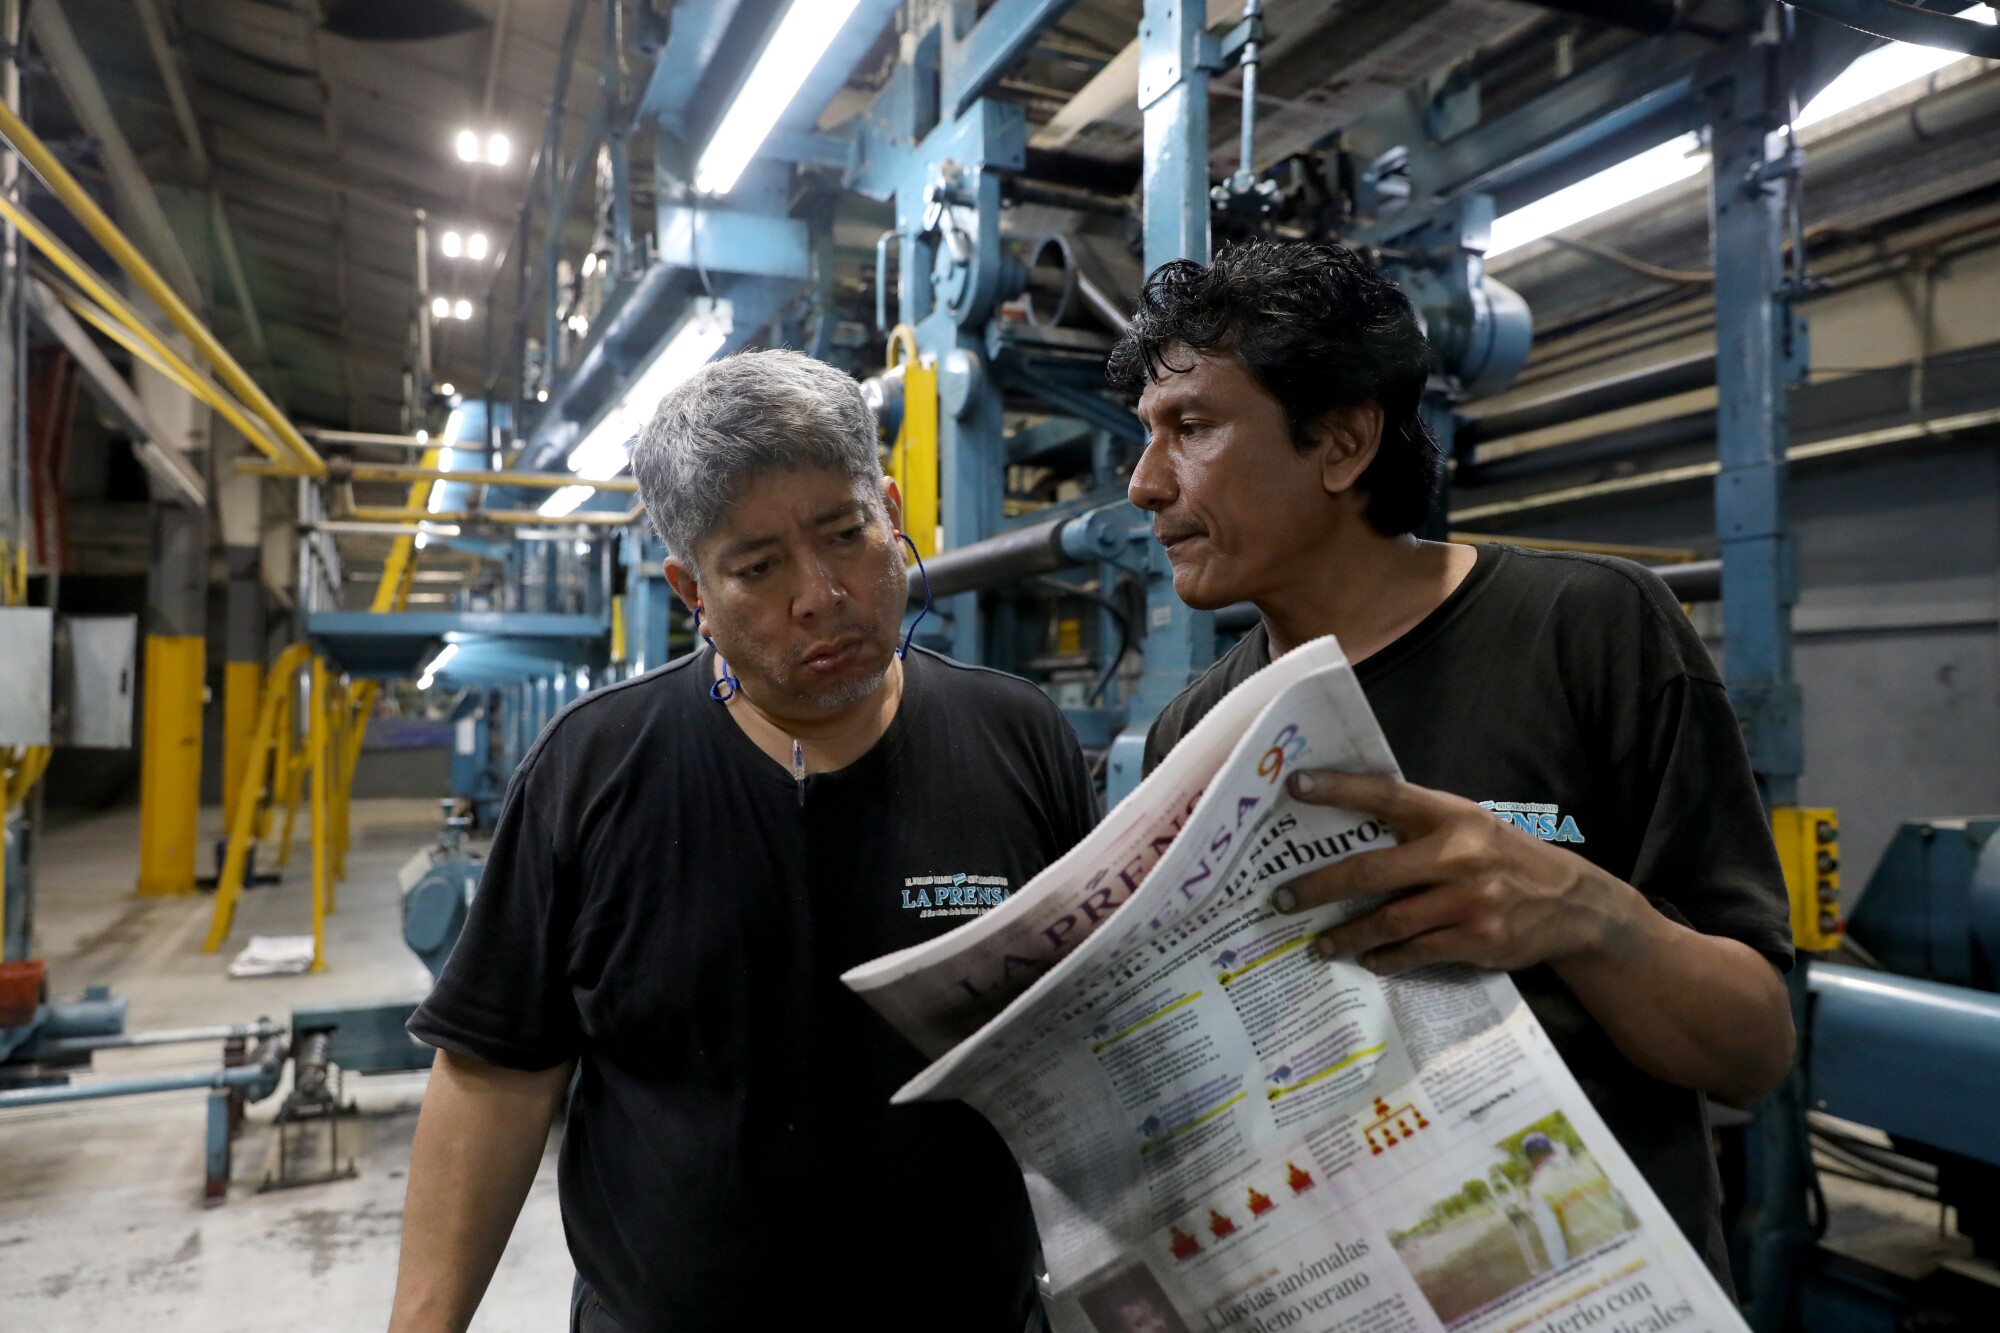 La Prensa employees